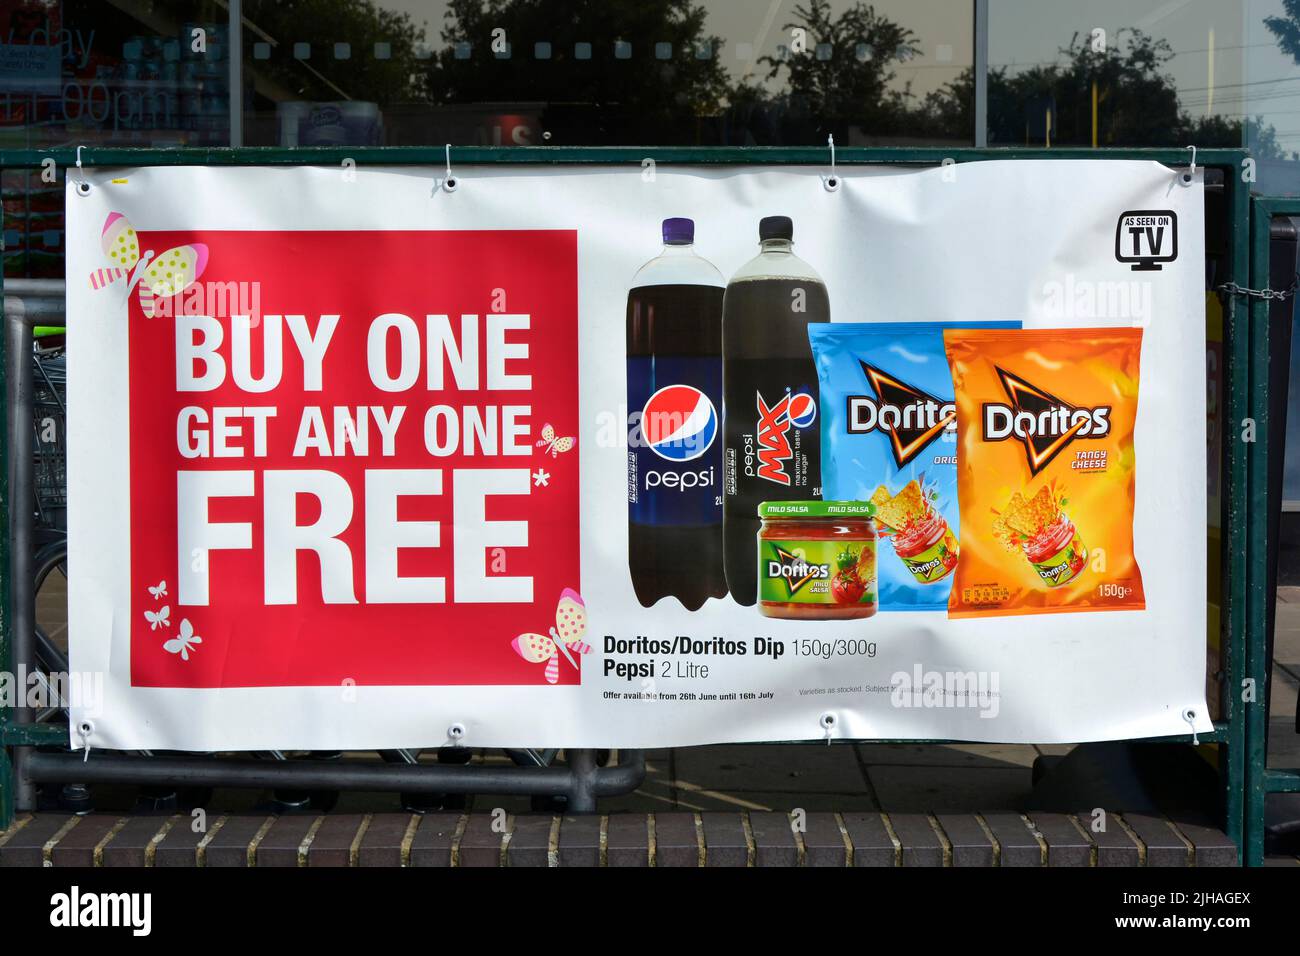 Banner auf Geländern vor dem örtlichen Supermarkt, der für „Buy One Get One“ wirbt, Sonderangebote für Speisen und Getränke (Datumspreise entfernt) England Großbritannien Stockfoto